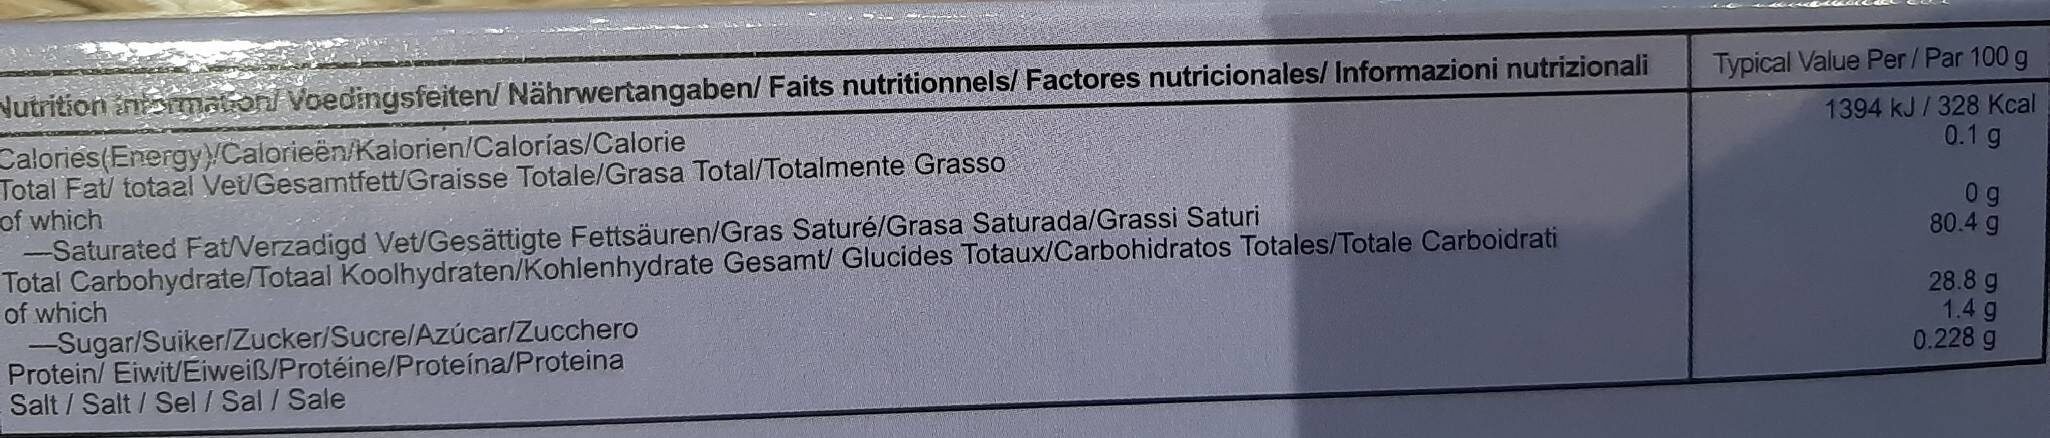 Taro mochi - Nutrition facts - fr